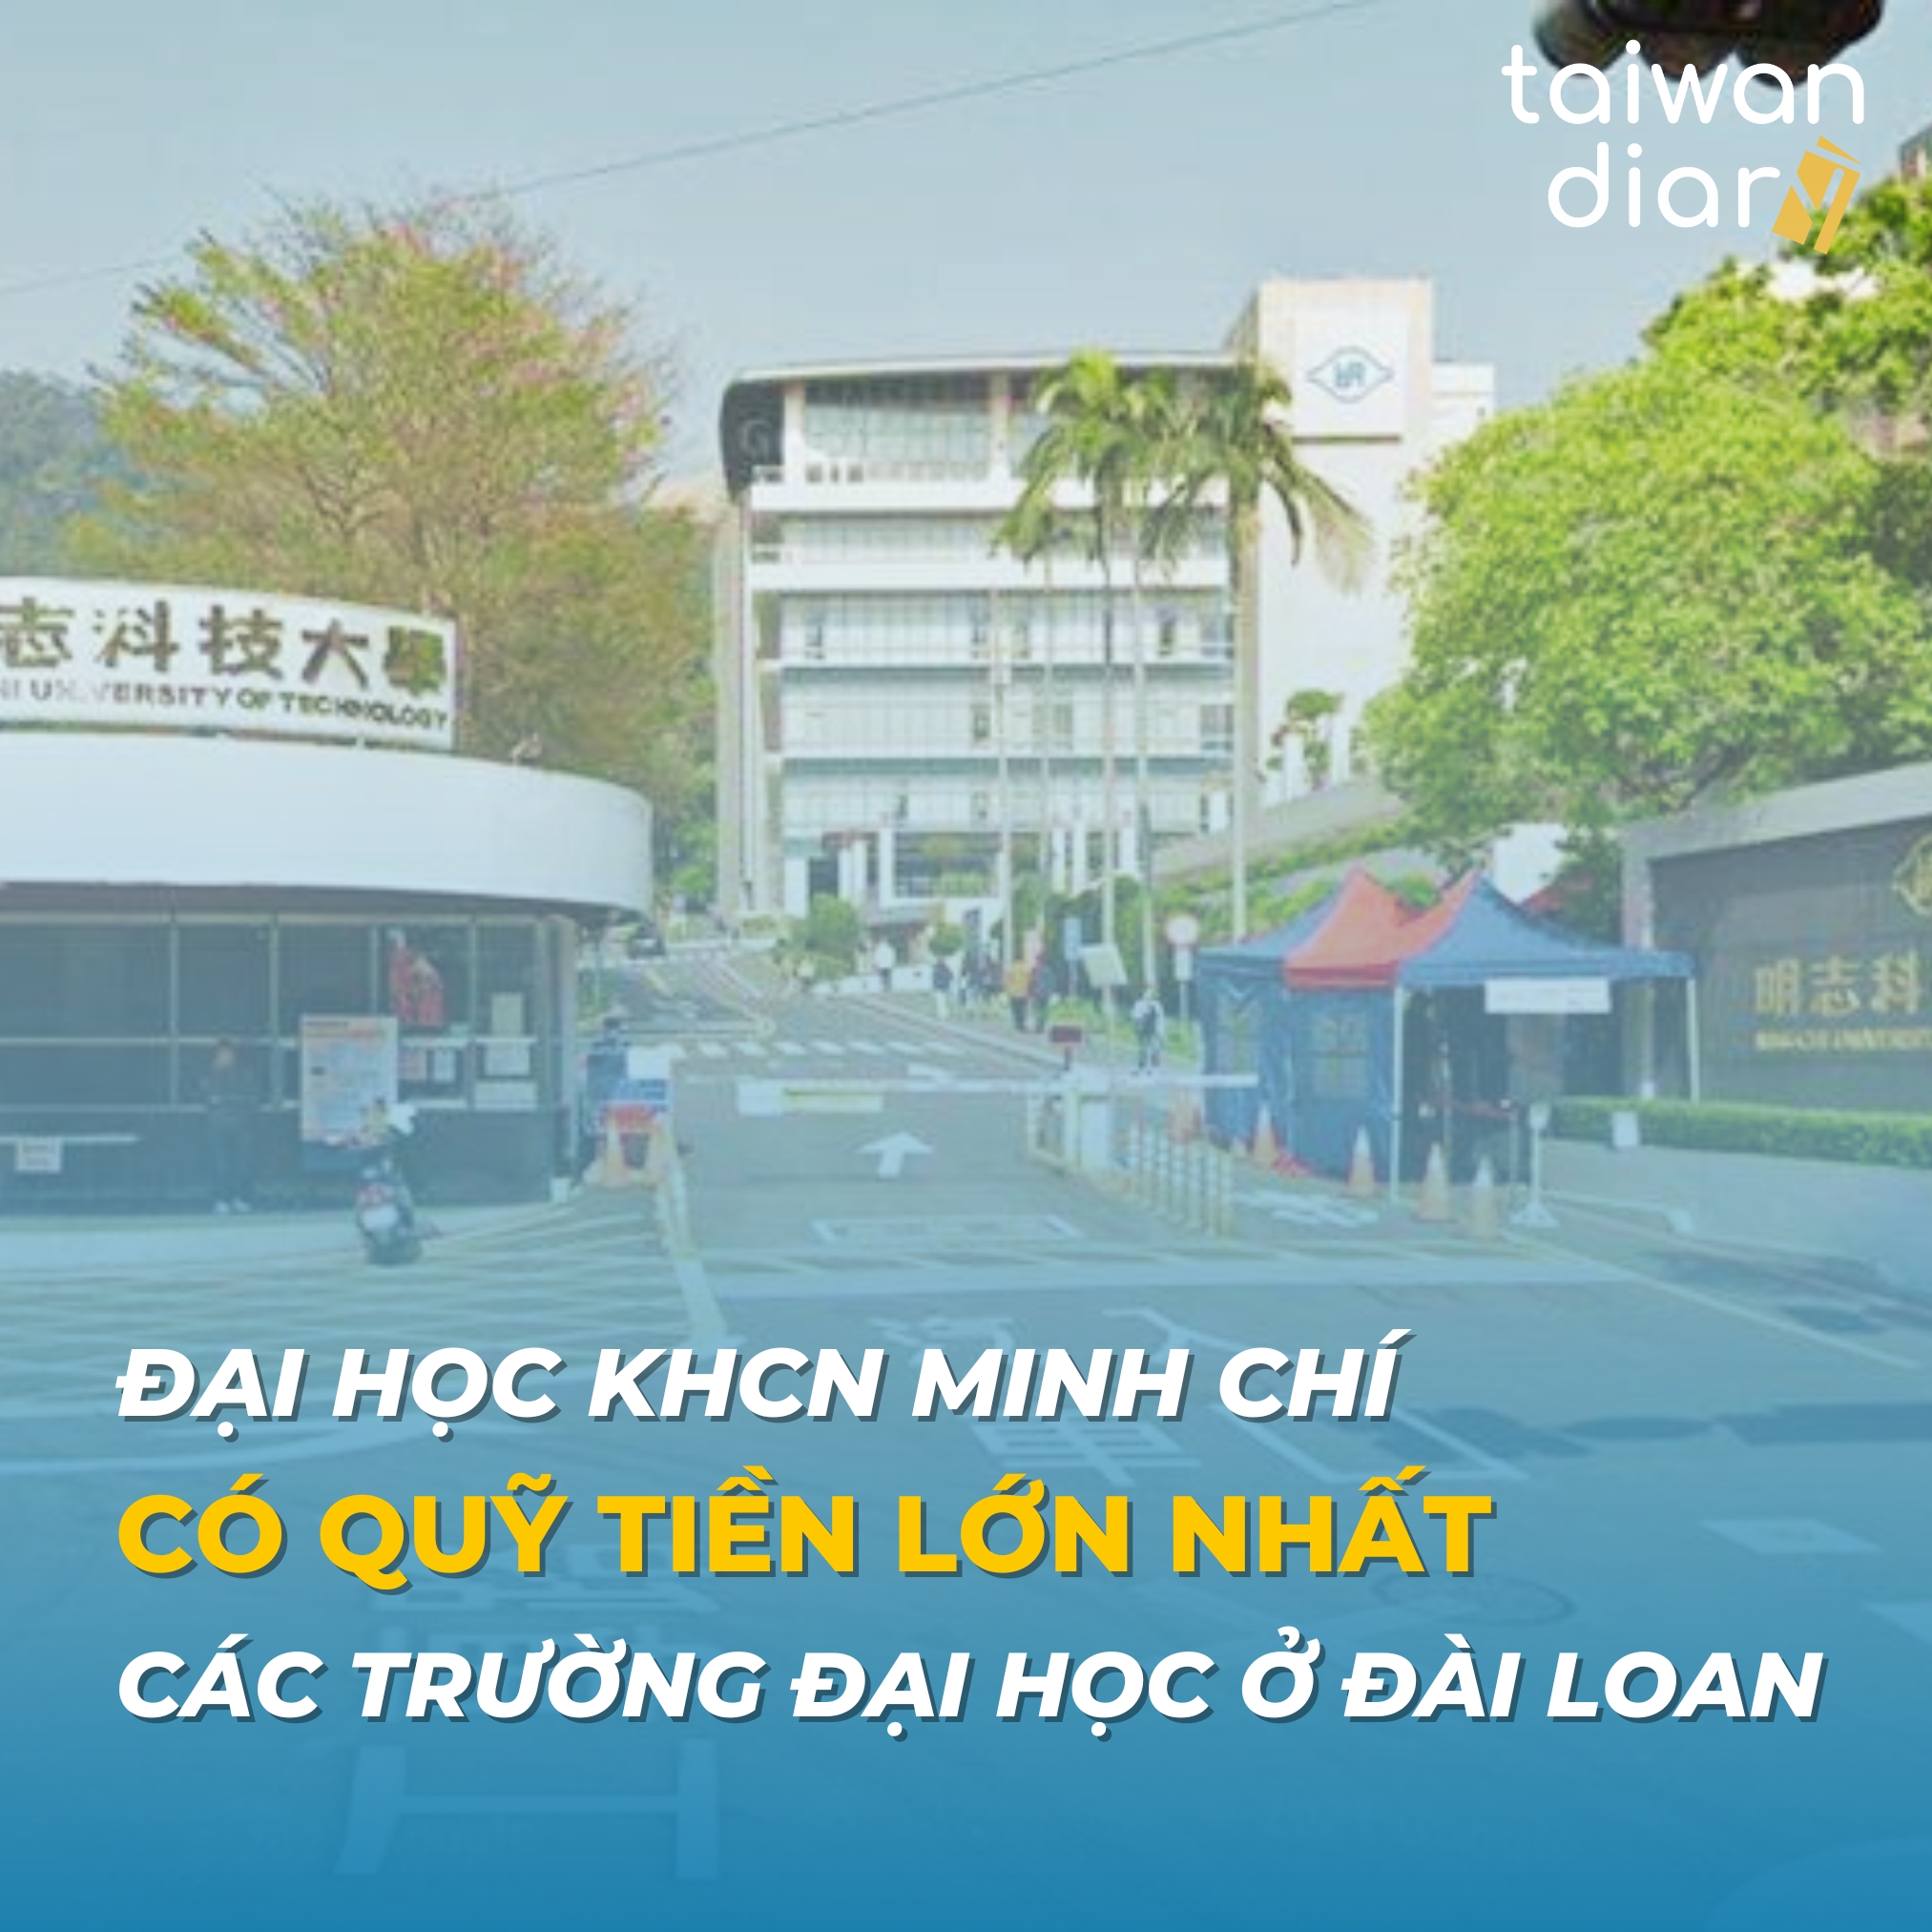 Đại học KHCN Minh Chí